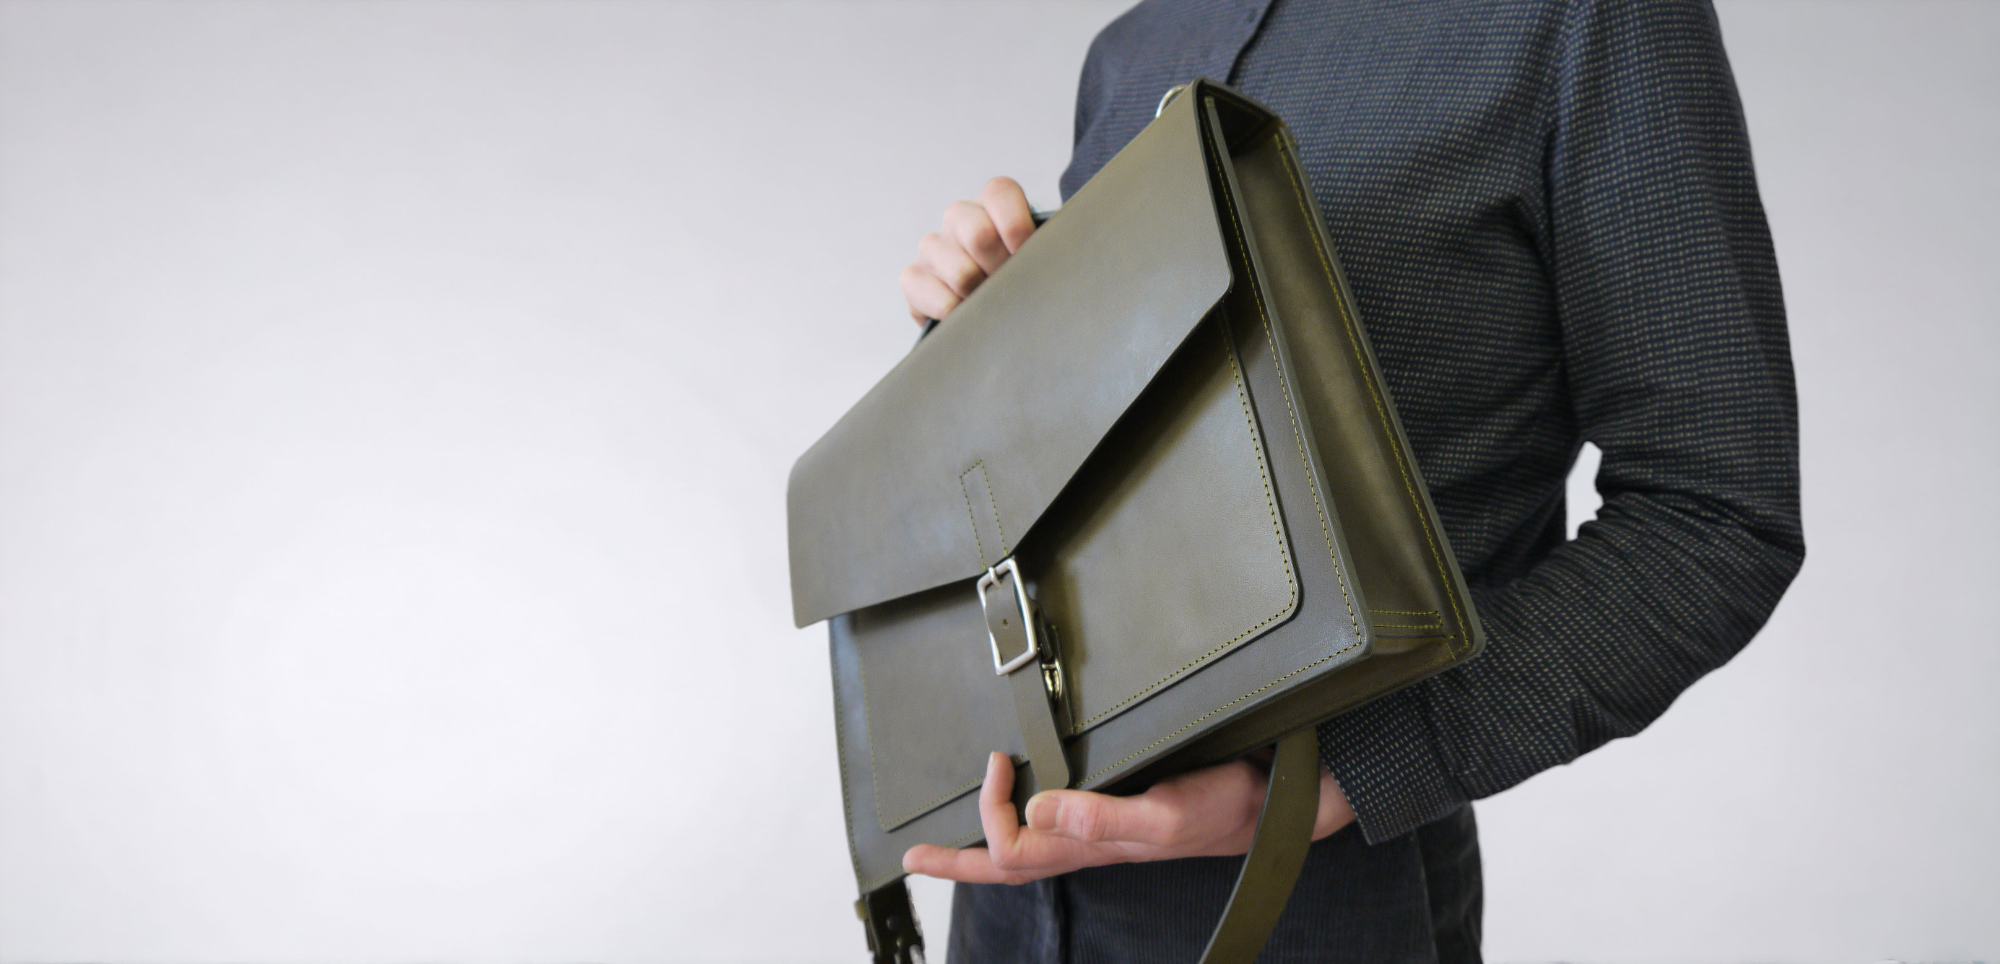 New Vintage Unisex Leather Handbags Envelope Clutch Bag Male Business A4  Portfolio Bag Men Leather Purse Briefcase